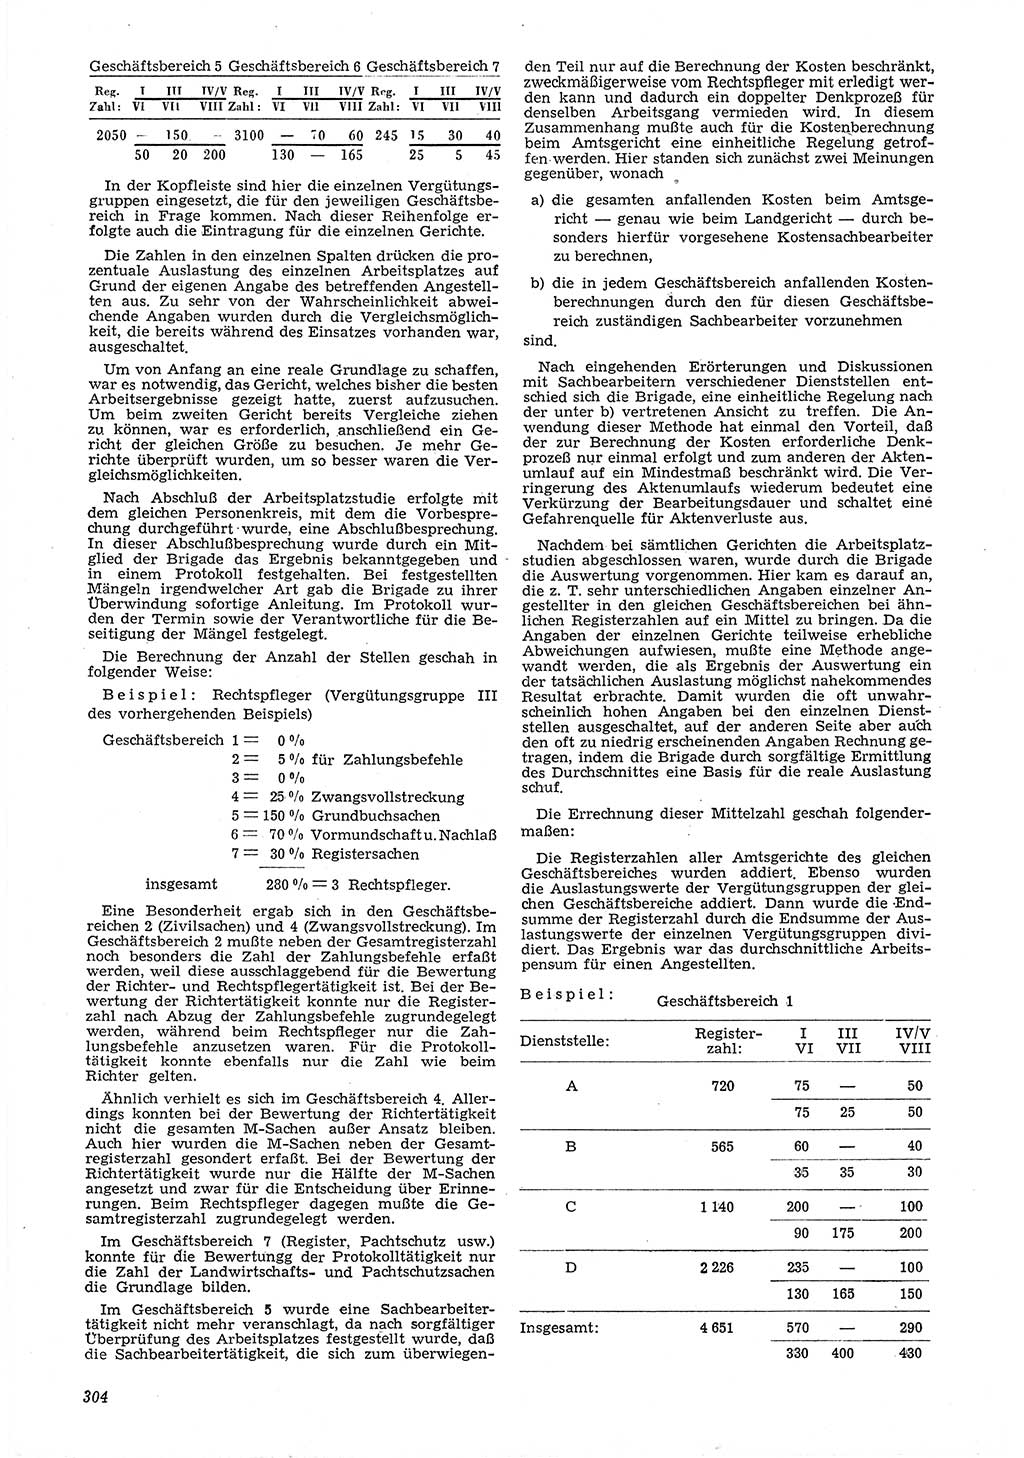 Neue Justiz (NJ), Zeitschrift für Recht und Rechtswissenschaft [Deutsche Demokratische Republik (DDR)], 6. Jahrgang 1952, Seite 304 (NJ DDR 1952, S. 304)